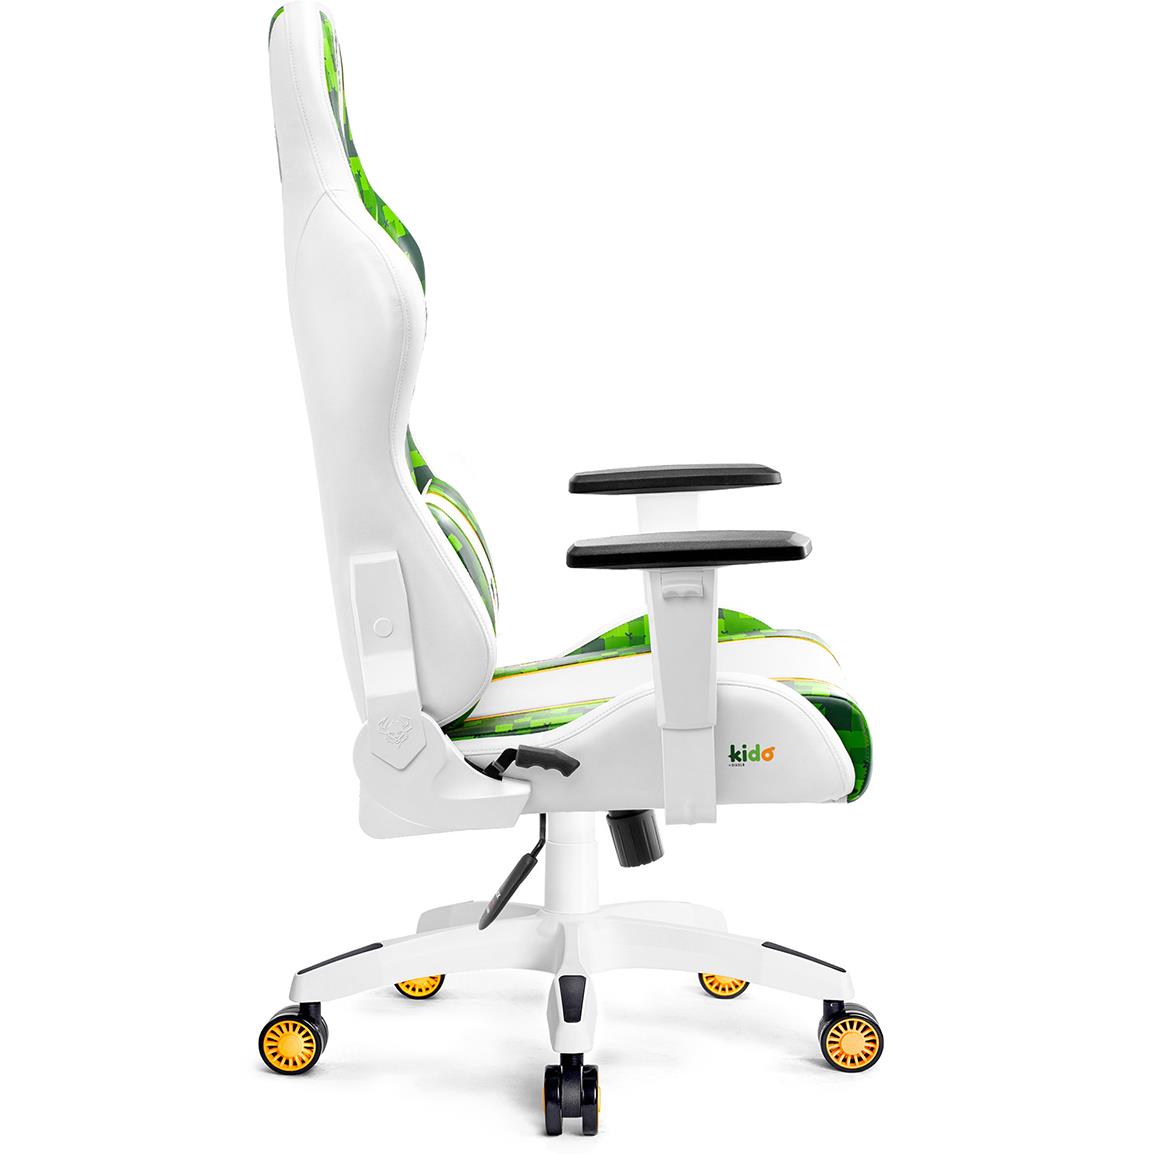 Diablo X-One 2.0 kancelarijska stolica 64x37x110 cm belo zelena